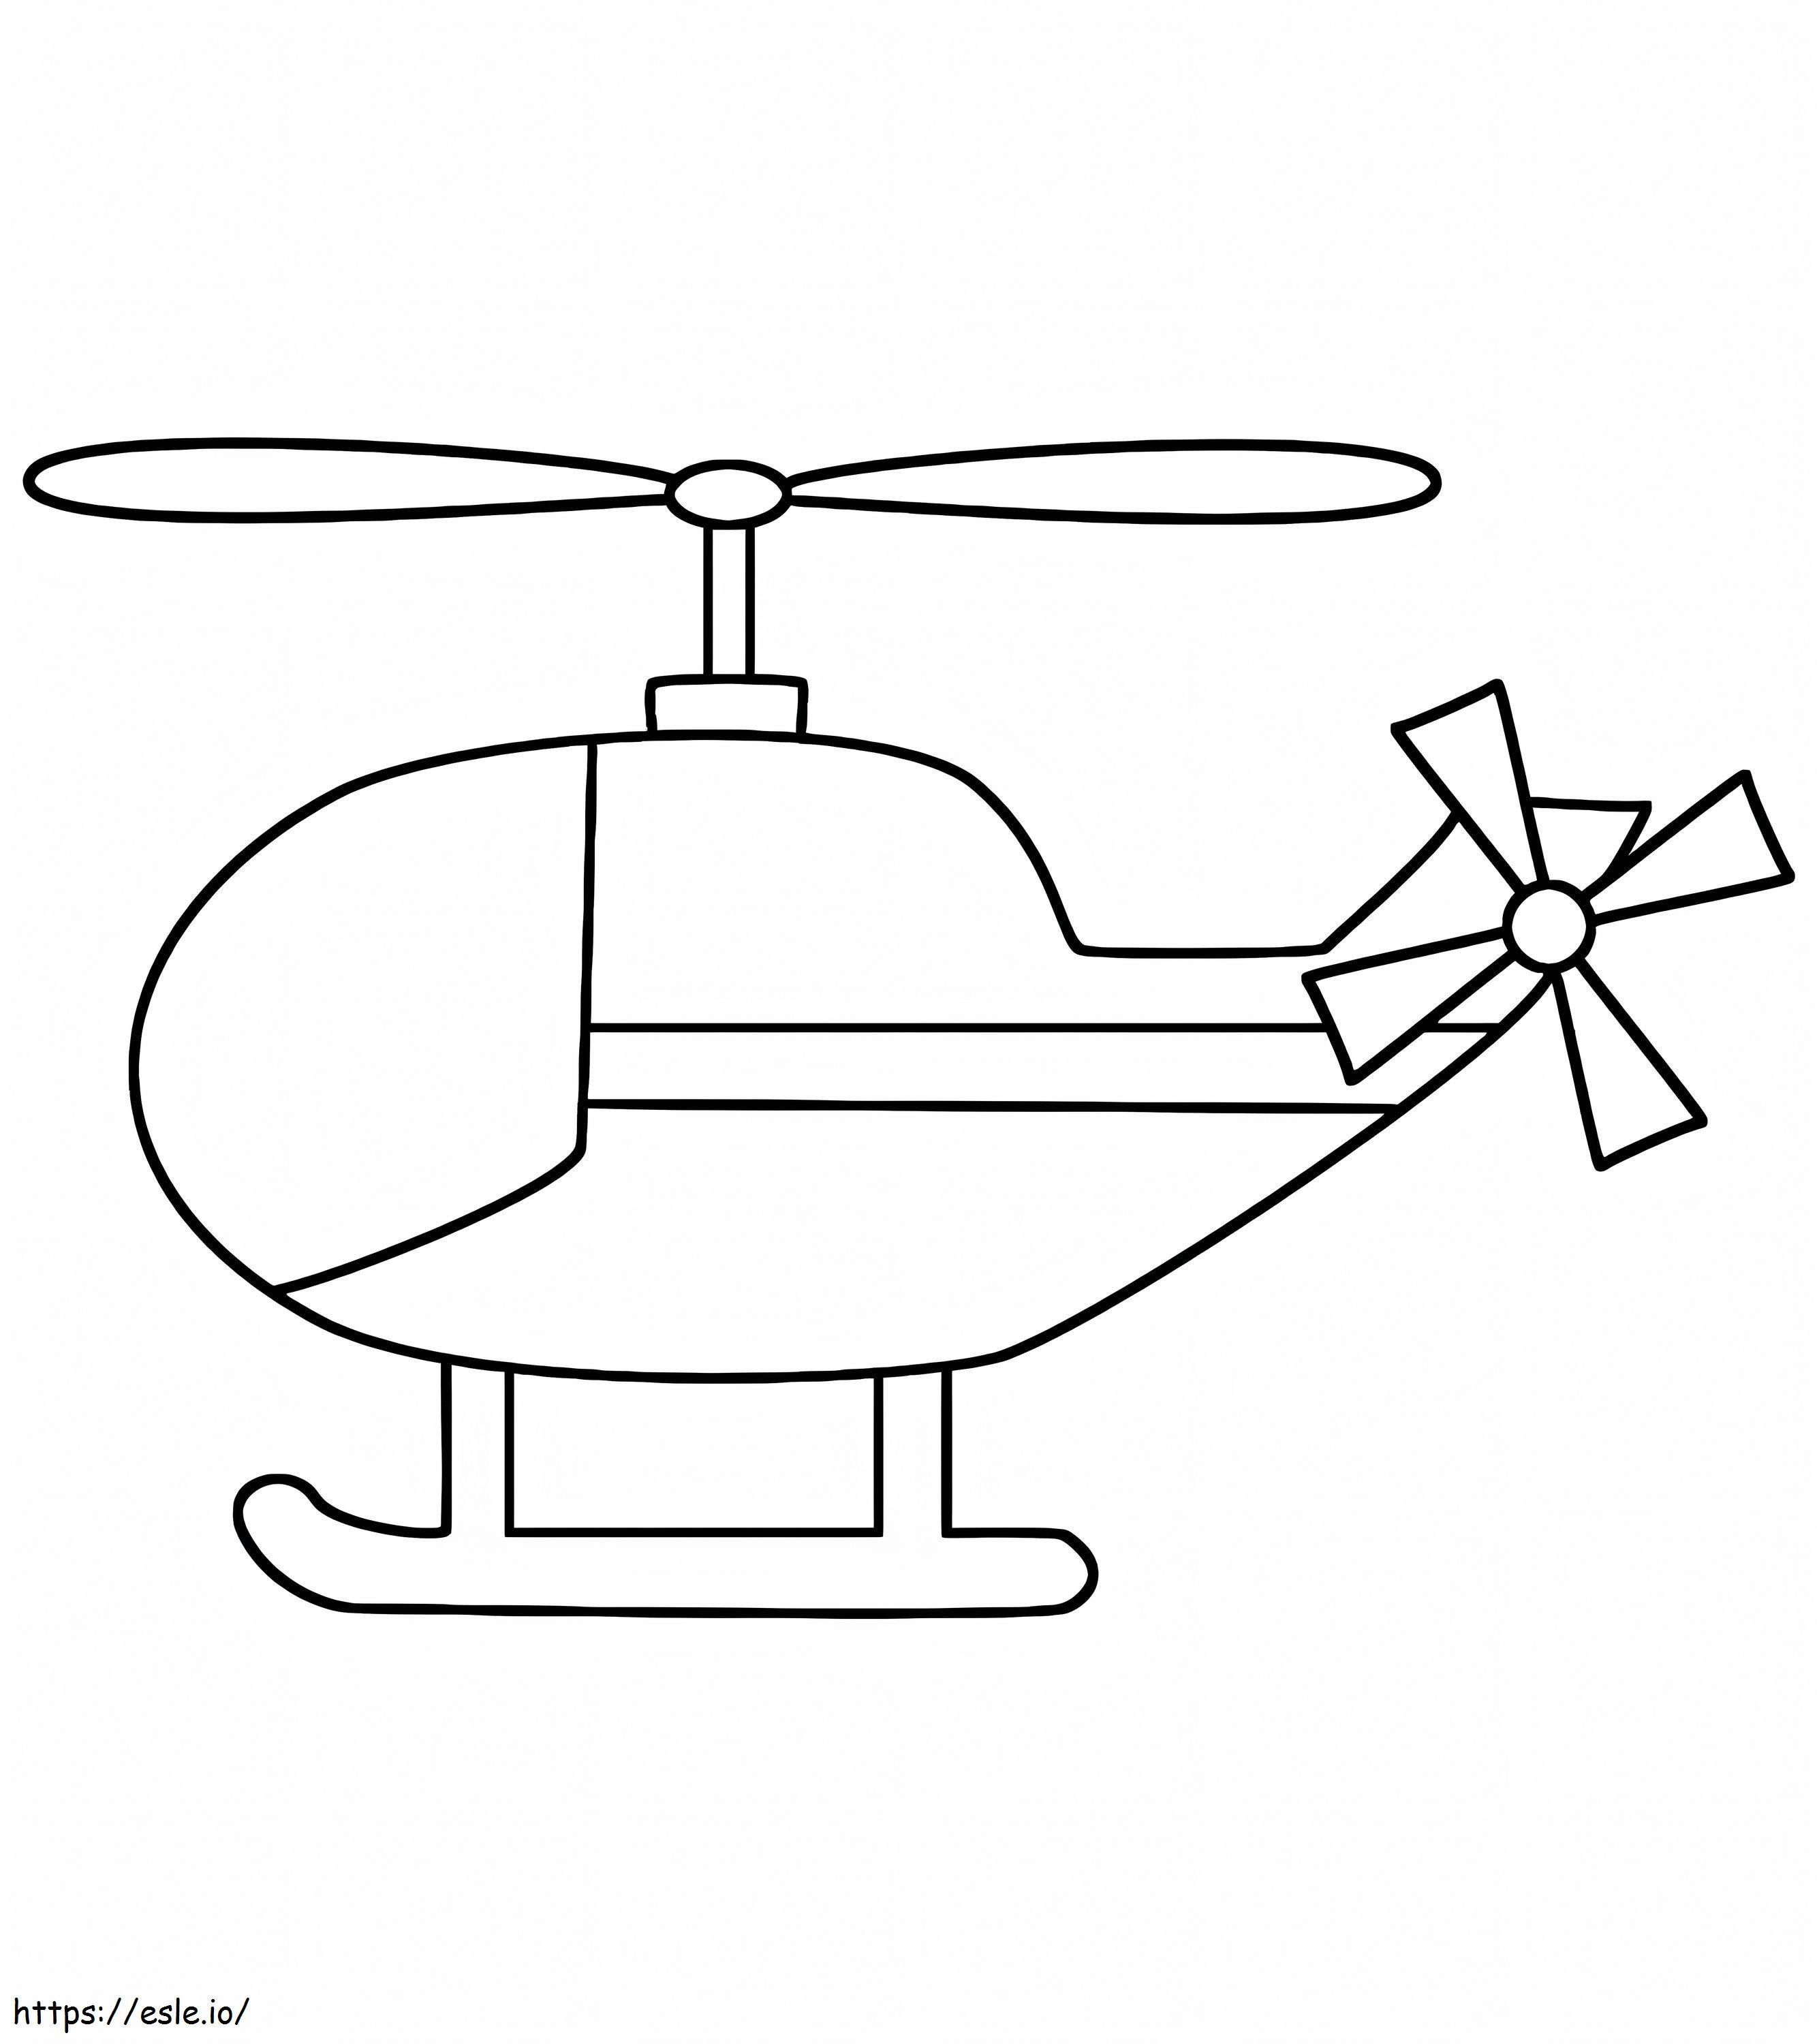 Hubschrauber-Malvorlagen für Ihre Kleinen ausmalbilder